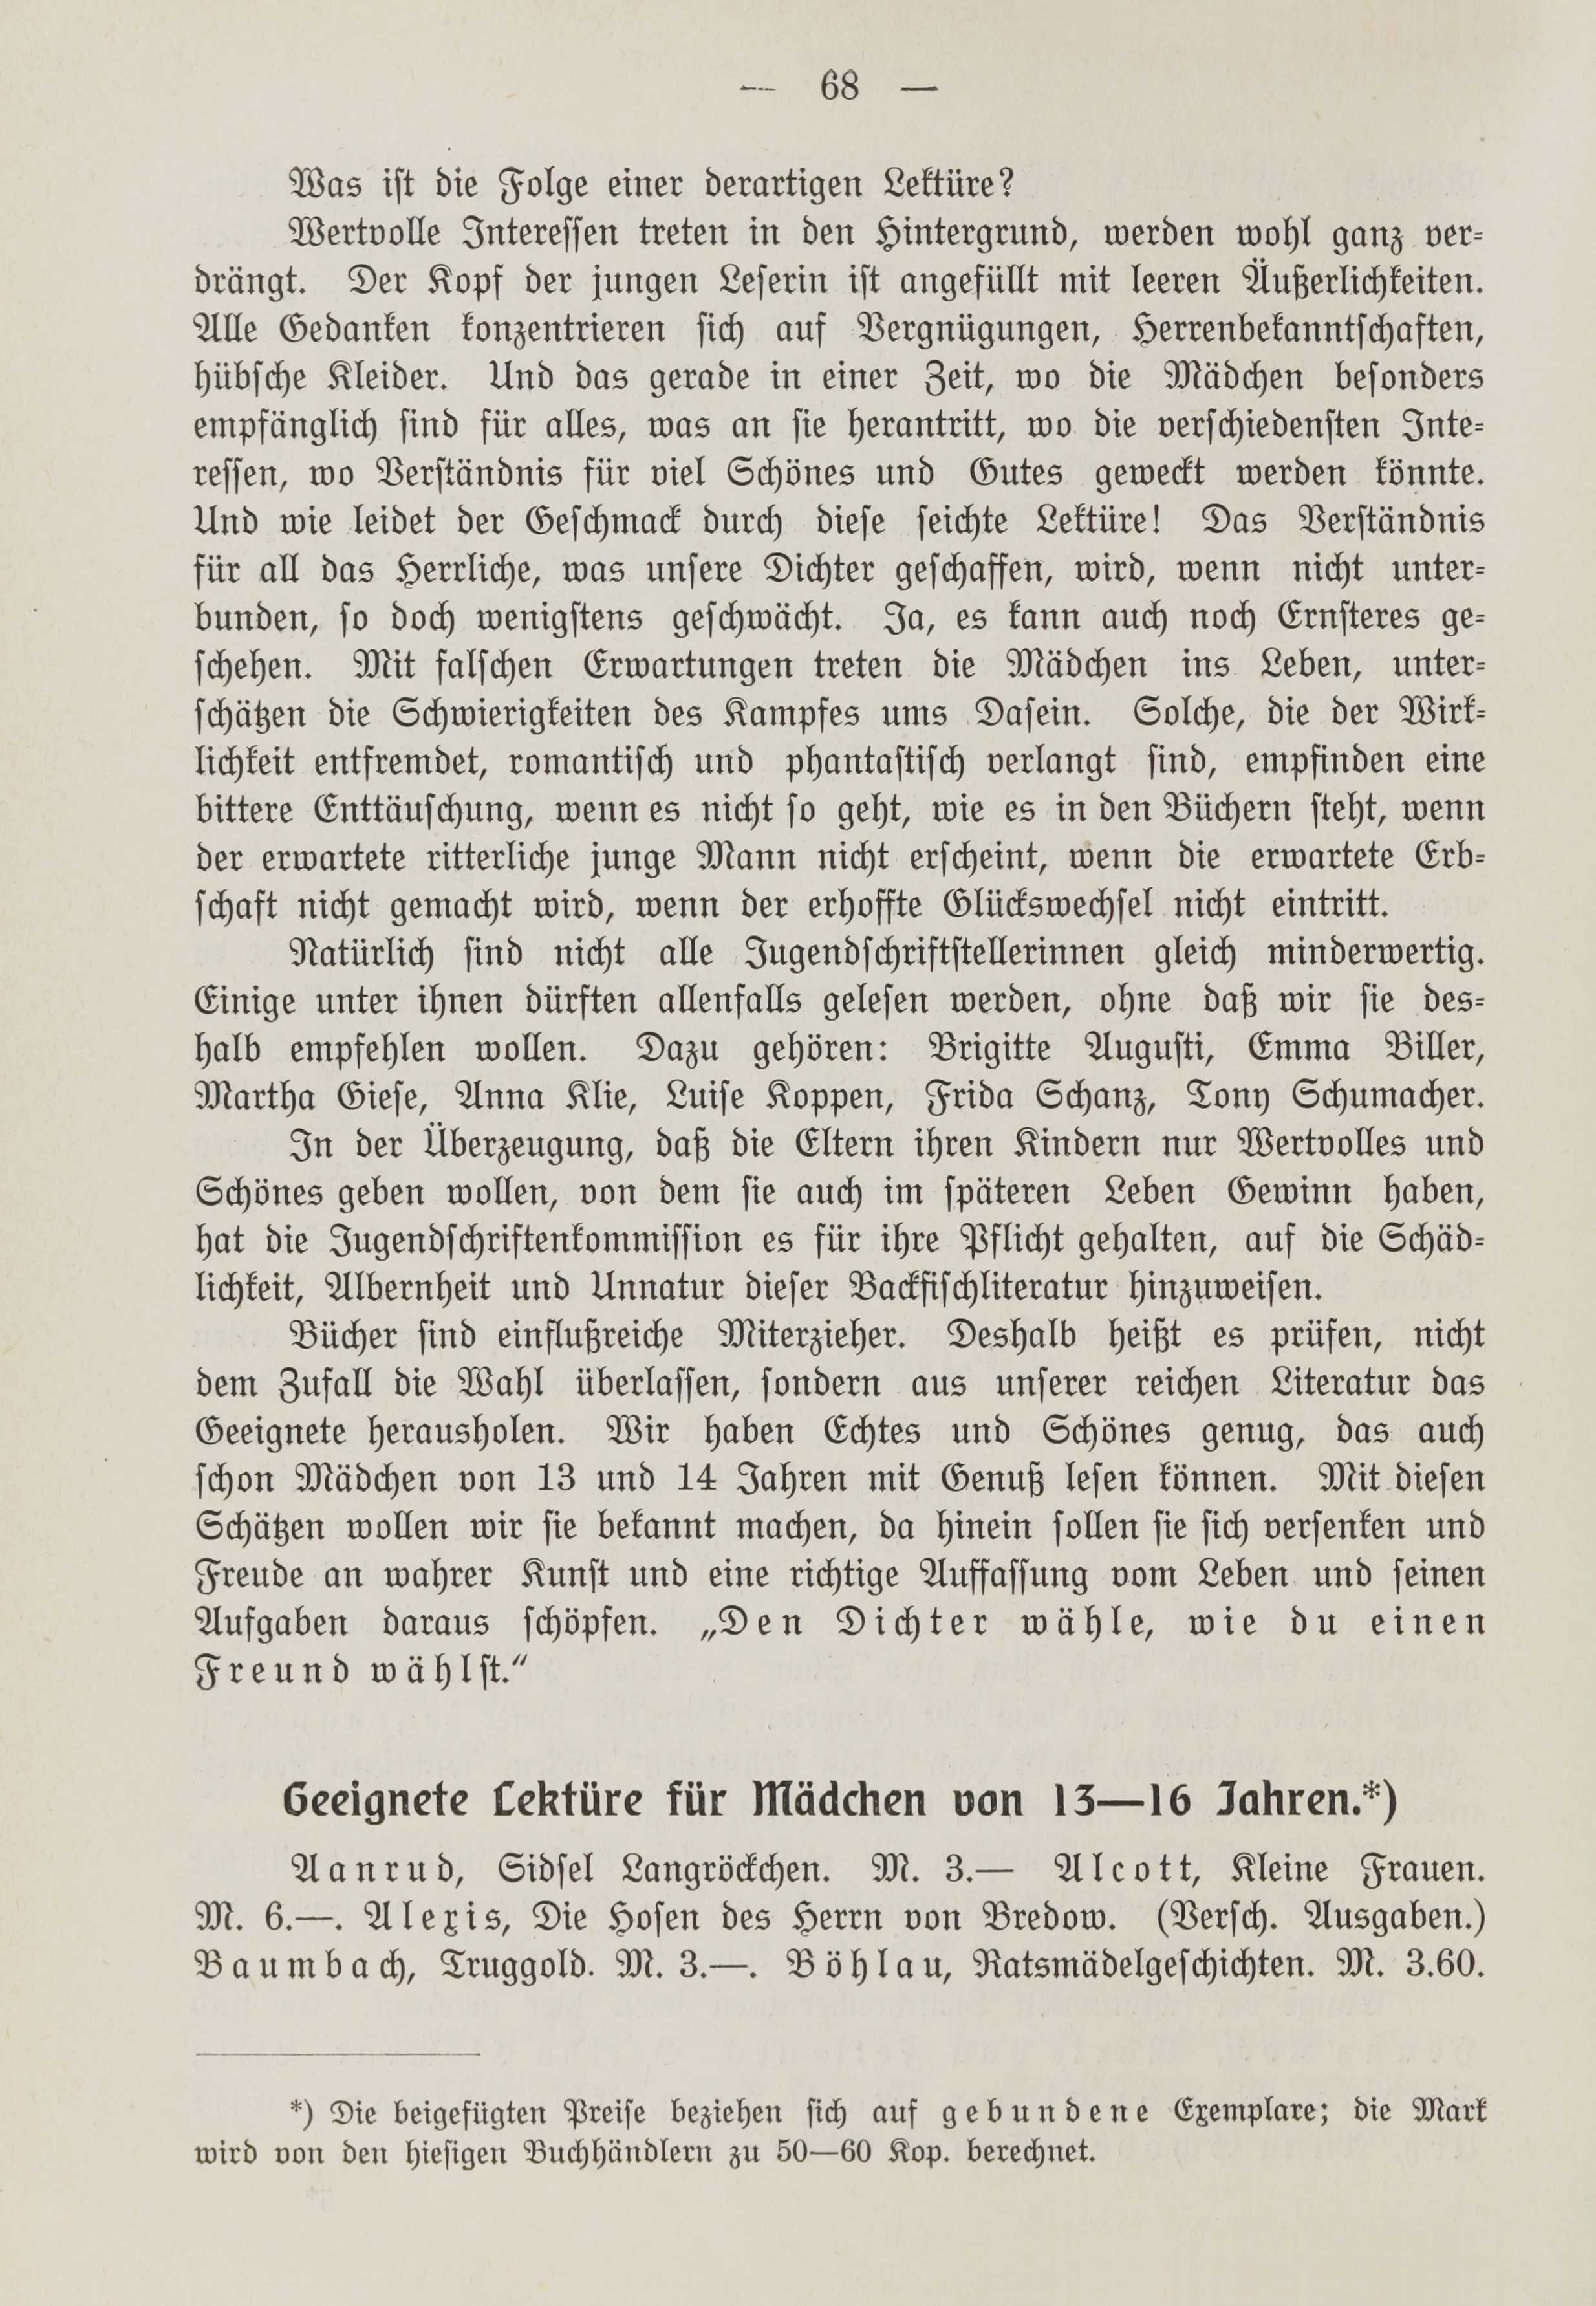 Deutsche Monatsschrift für Russland [1] (1912) | 75. (68) Põhitekst